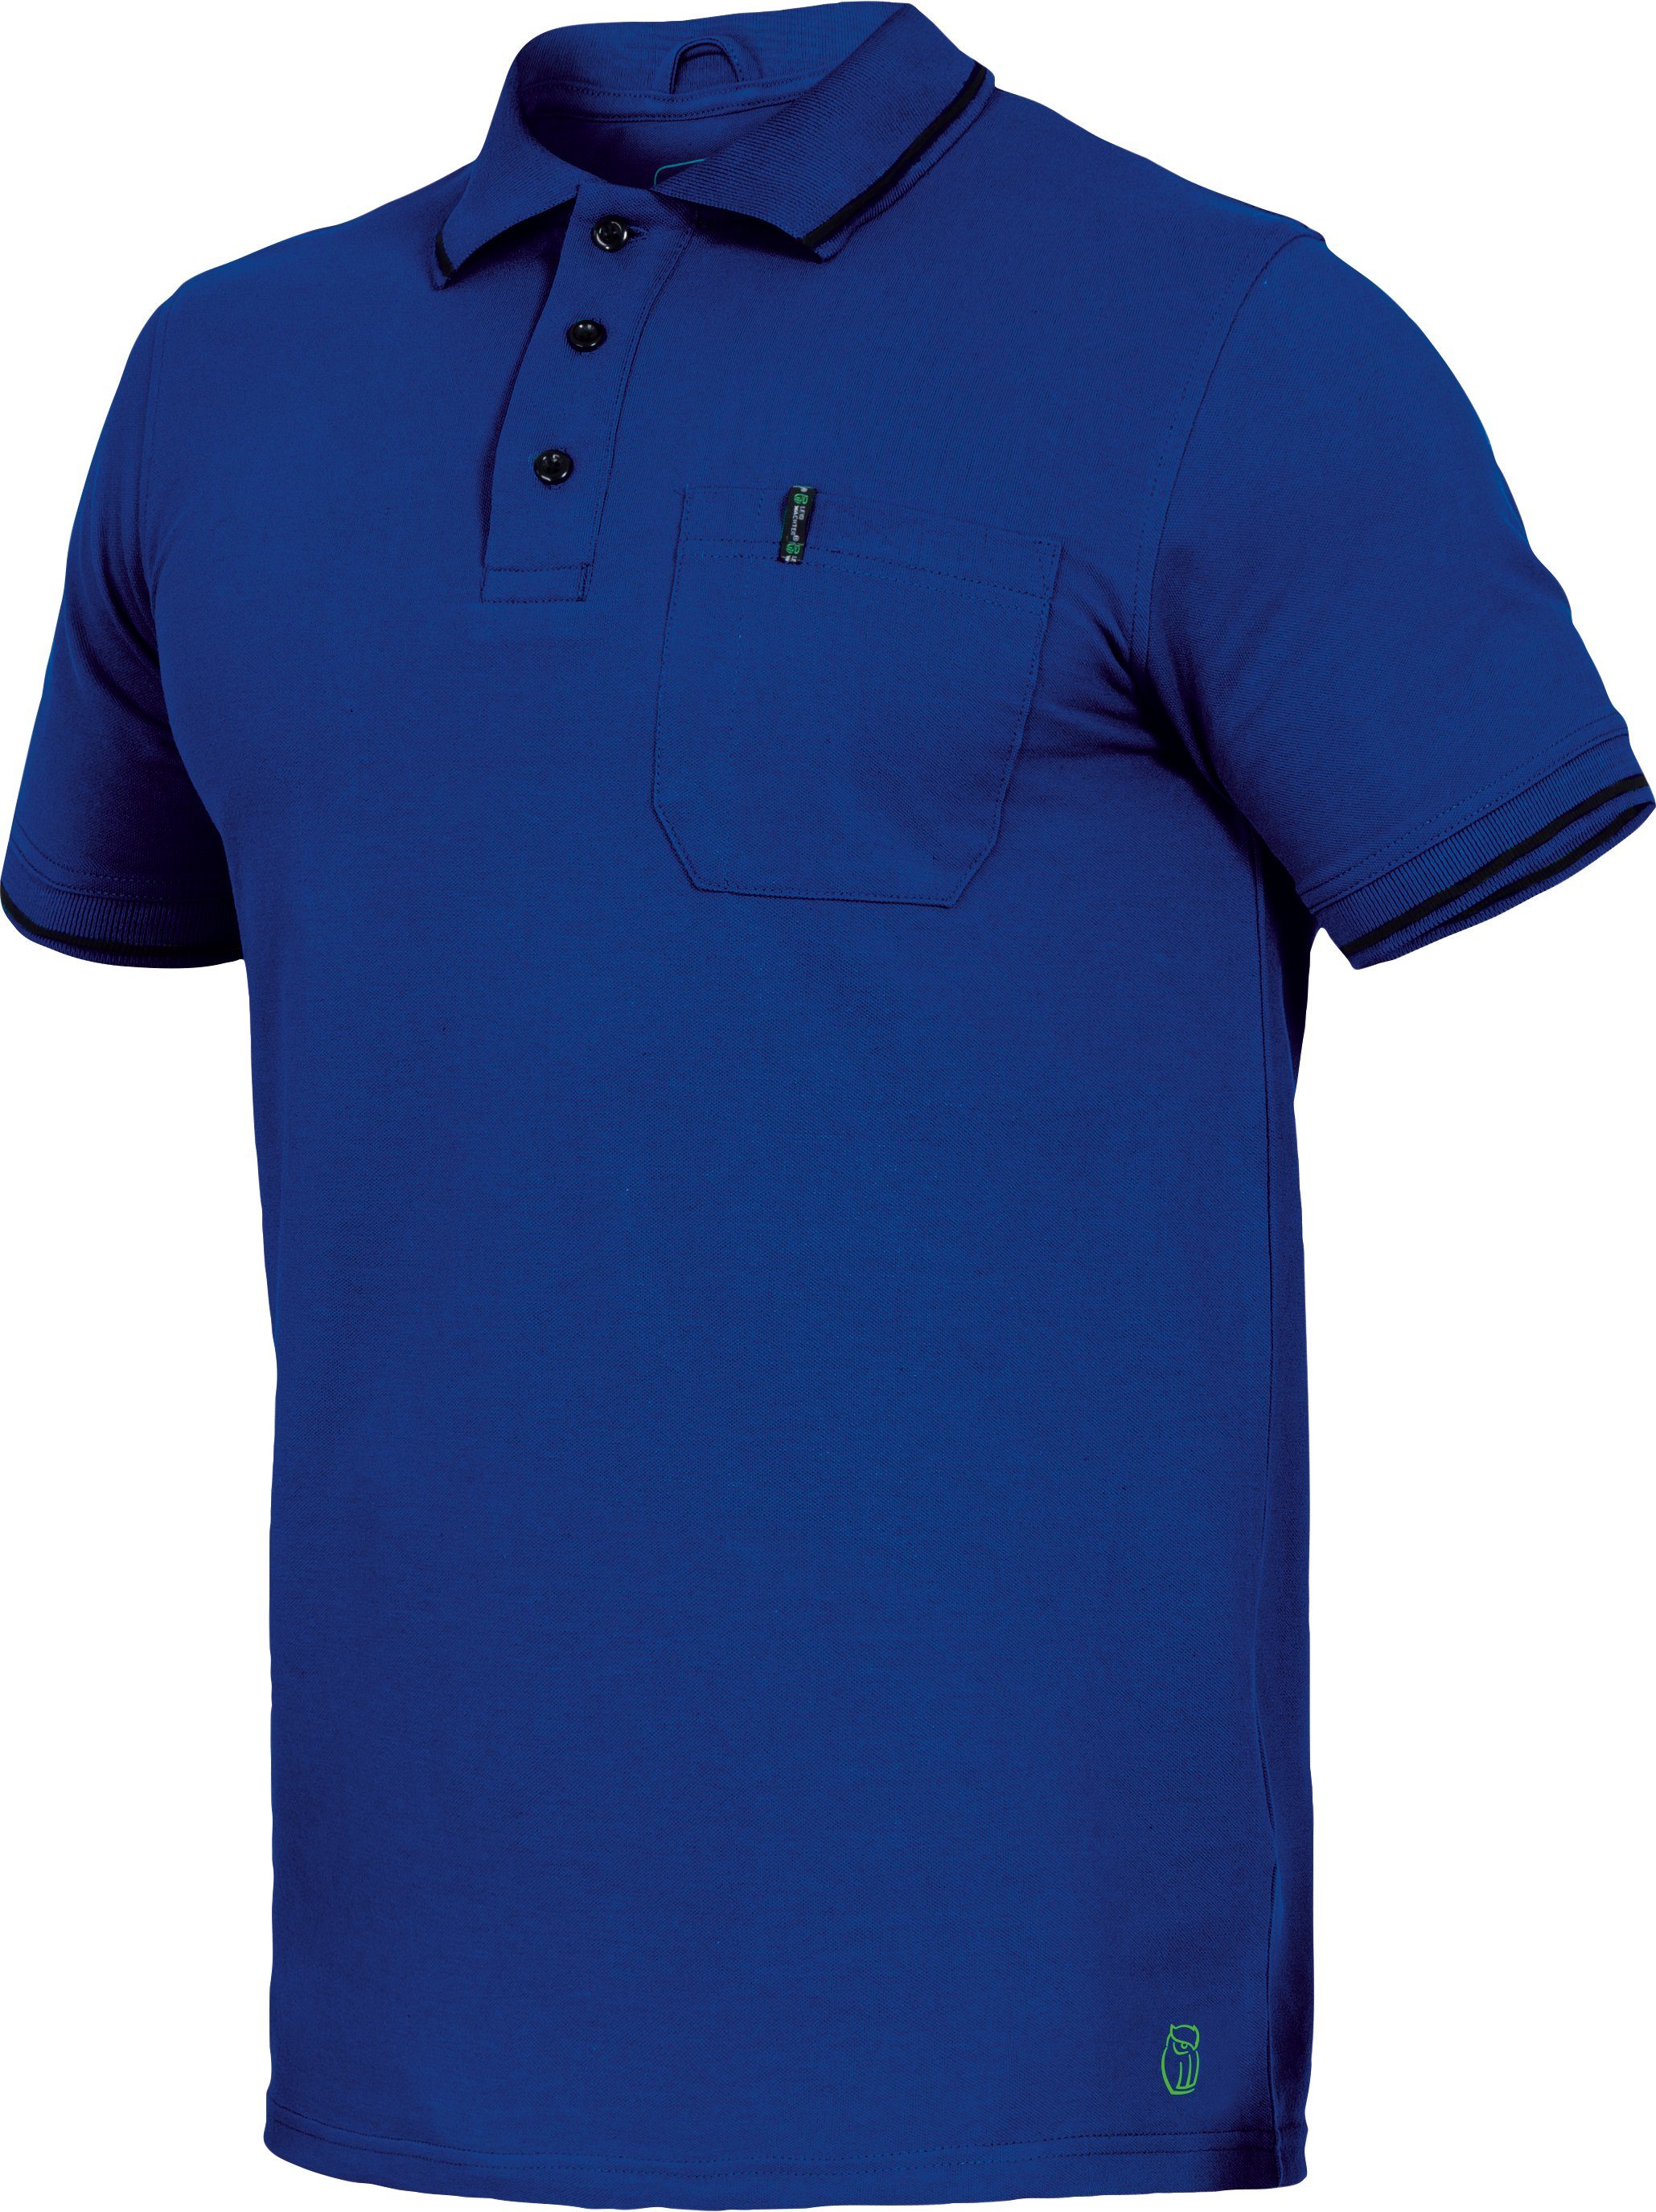 Poloshirt Poloshirt Flex-Line kornblau Herren Leibwächter